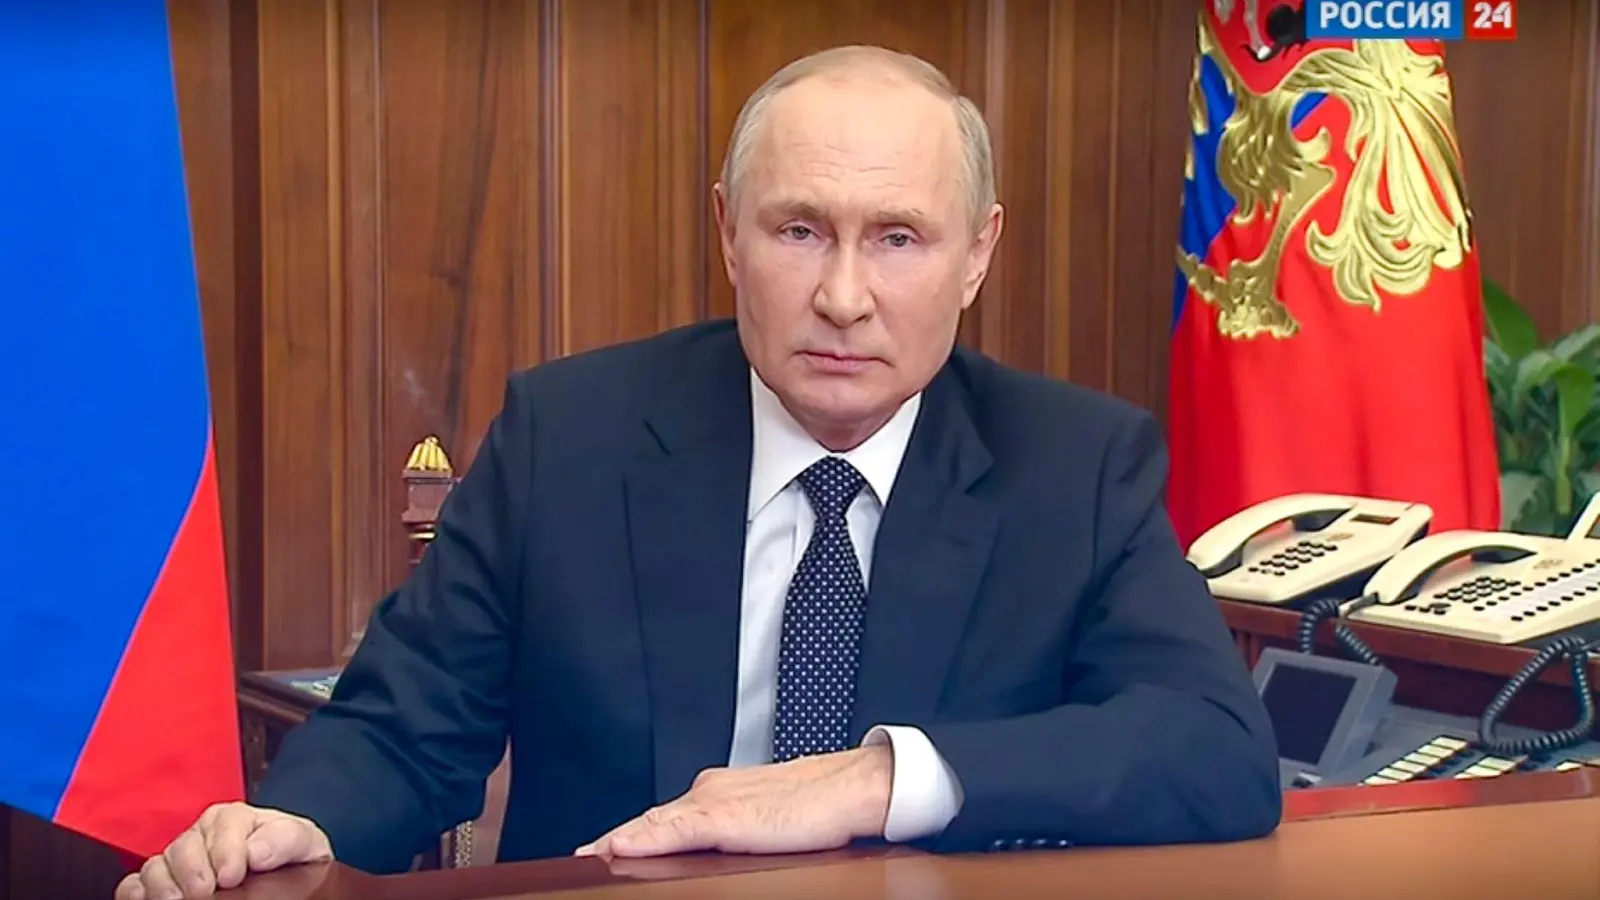 Russlands Präsident Putin will die Annexion mehrerer ukrainischer Gebiete am Freitag offiziell machen. (Foto: Uncredited/Russian Presidential Press Service/AP/dpa)